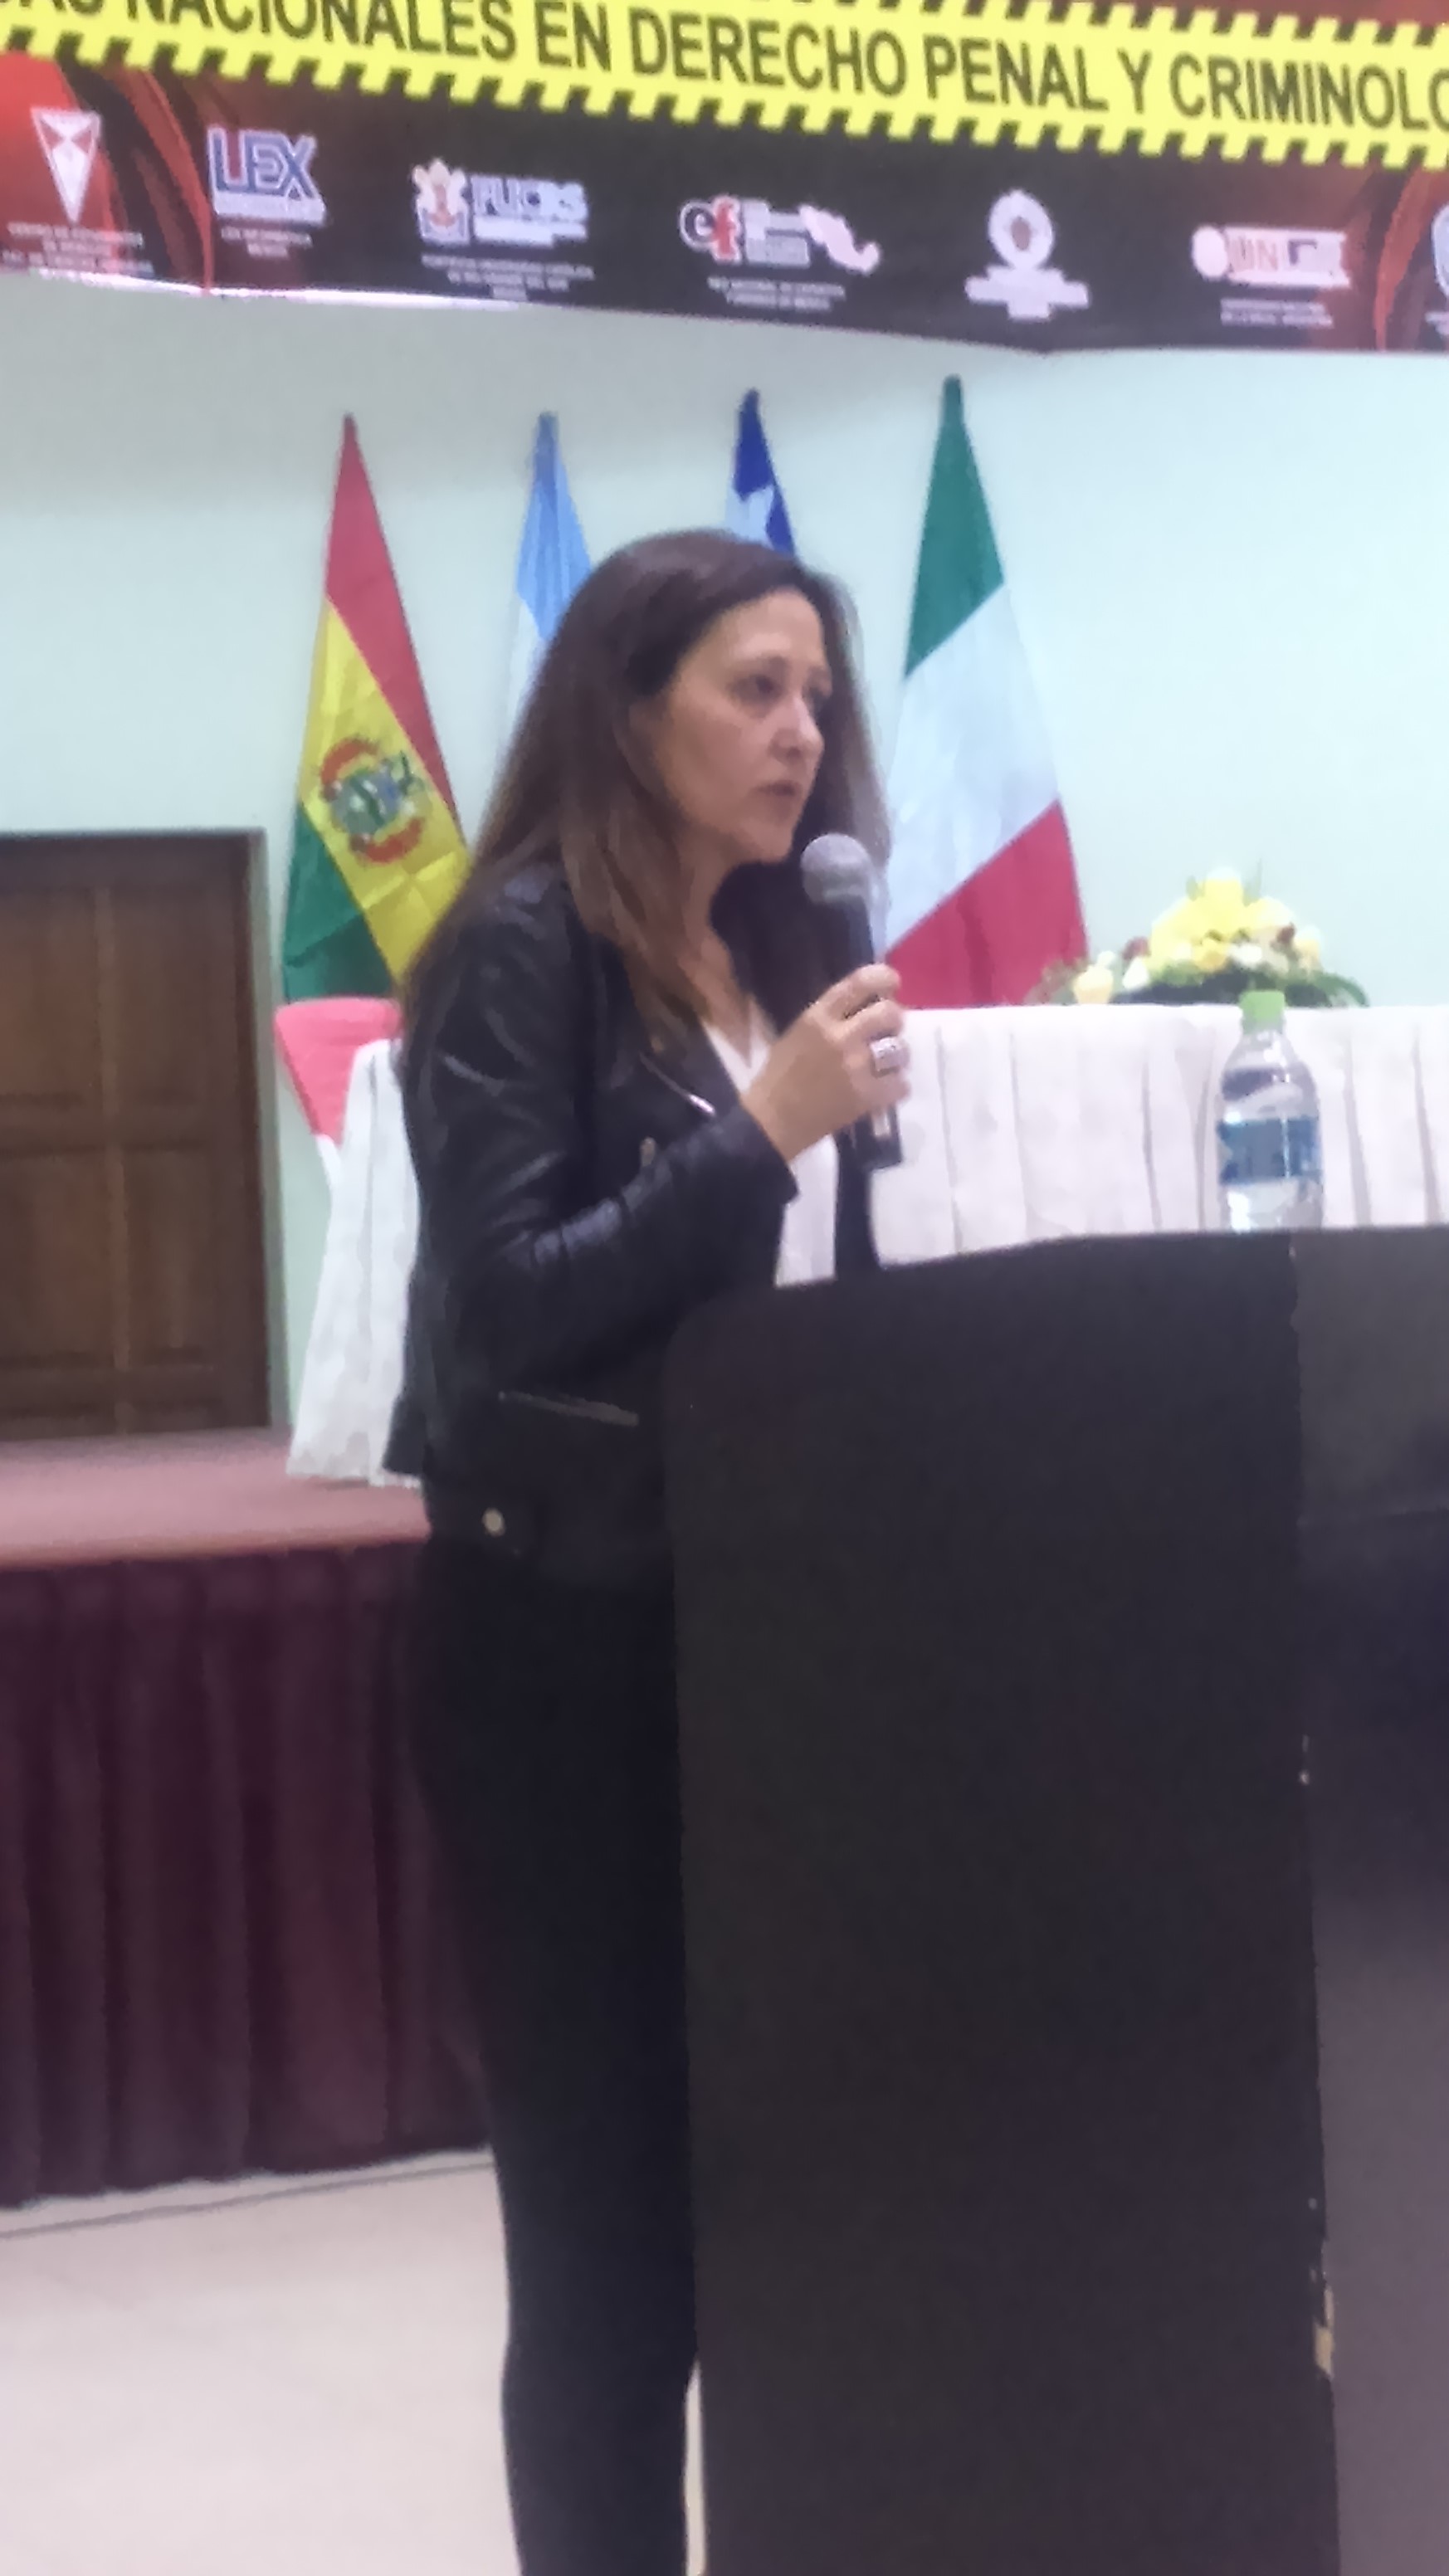 La Profª. Ascensión García Ruiz, intervino en el IV Congreso Latinoamericano de Derecho, II Jornadas Nacionales de Derecho Penal y Criminología